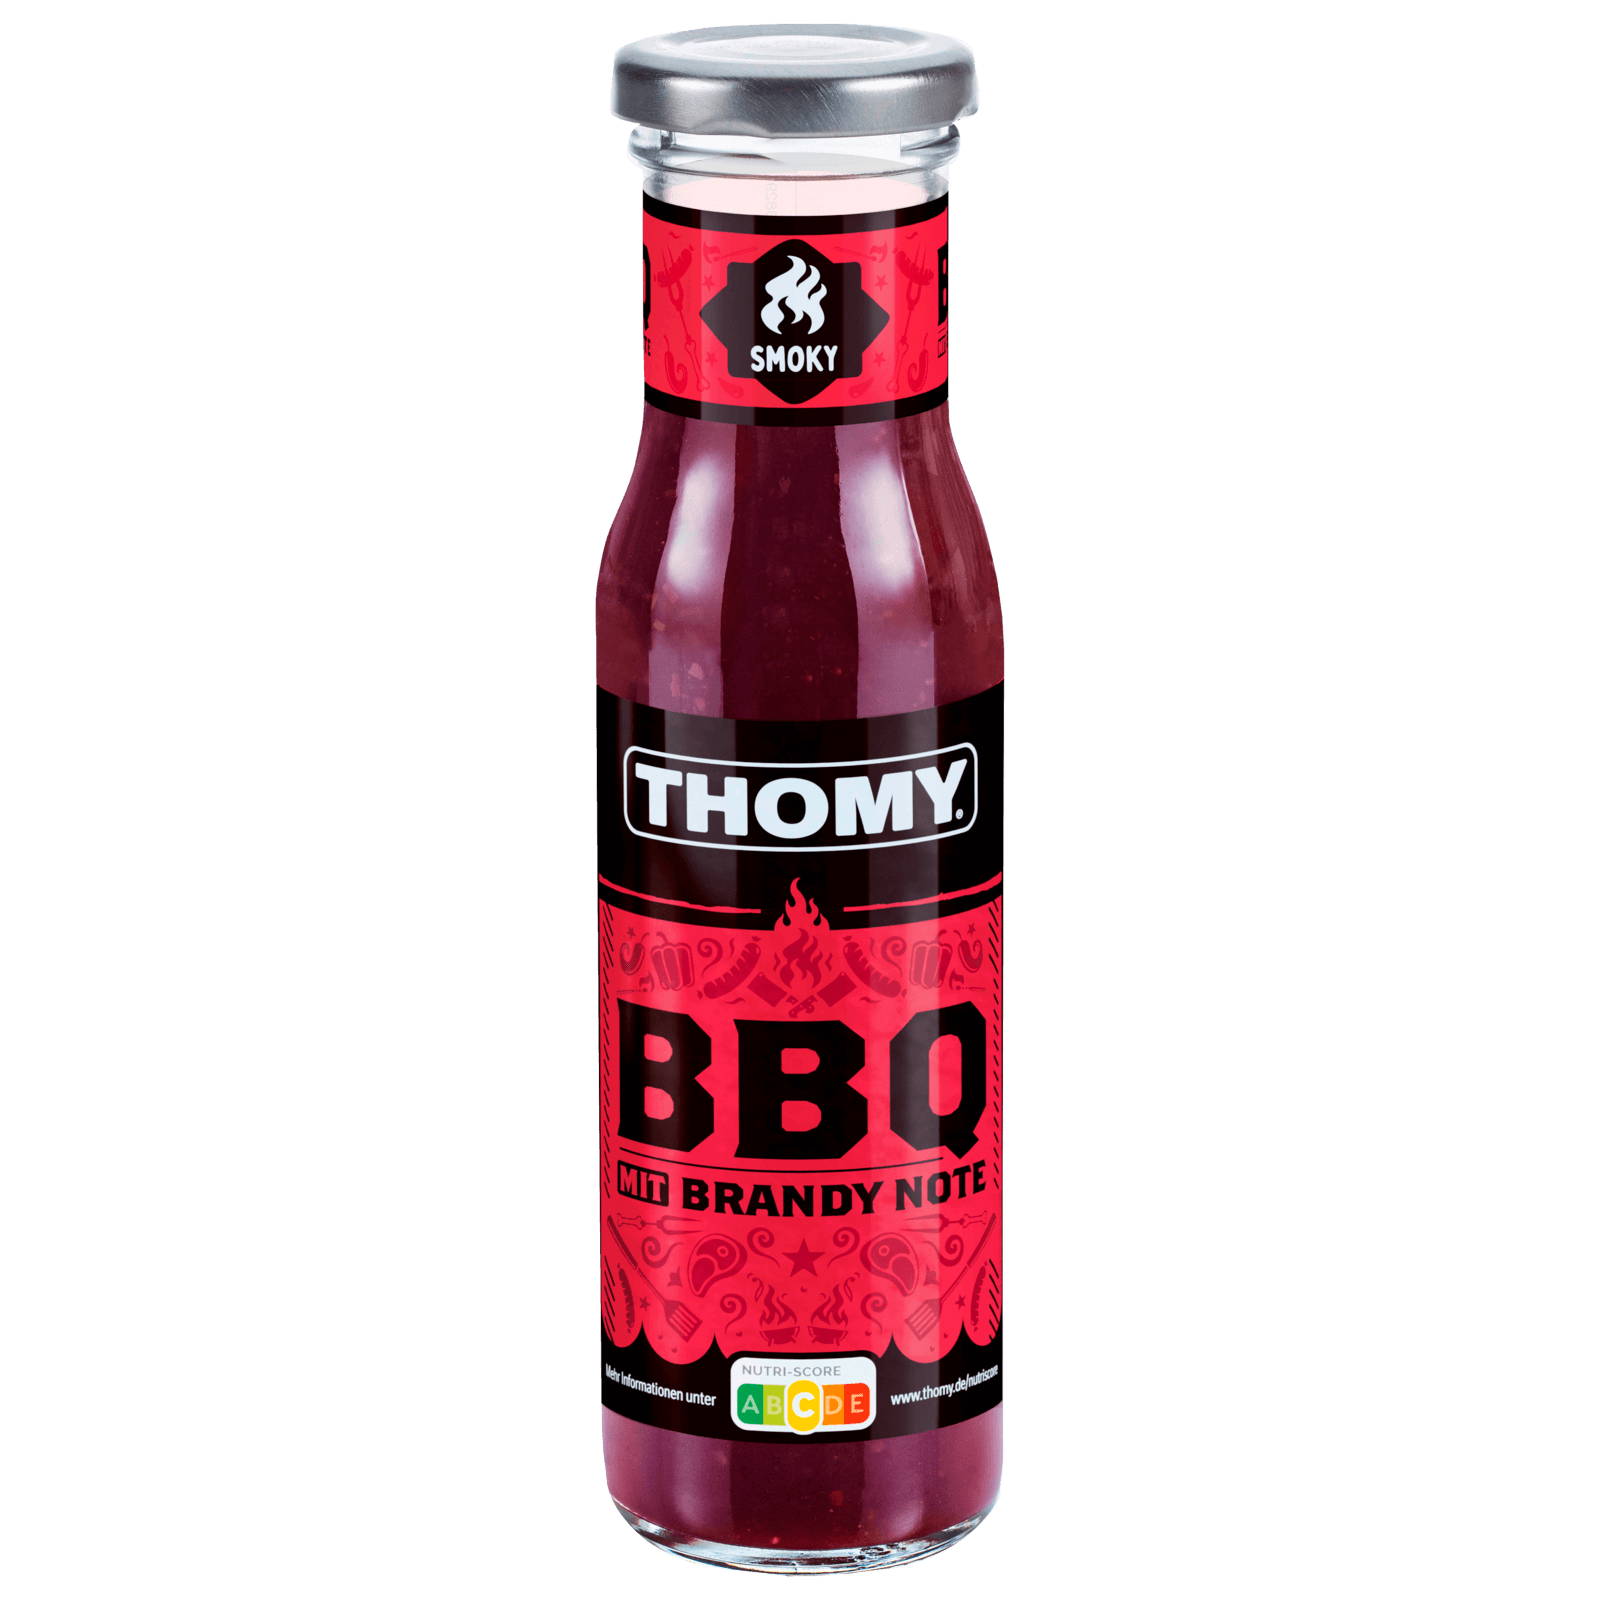 Thomy BBQ Sauce mit Brandy Note 230ml bei REWE online bestellen!